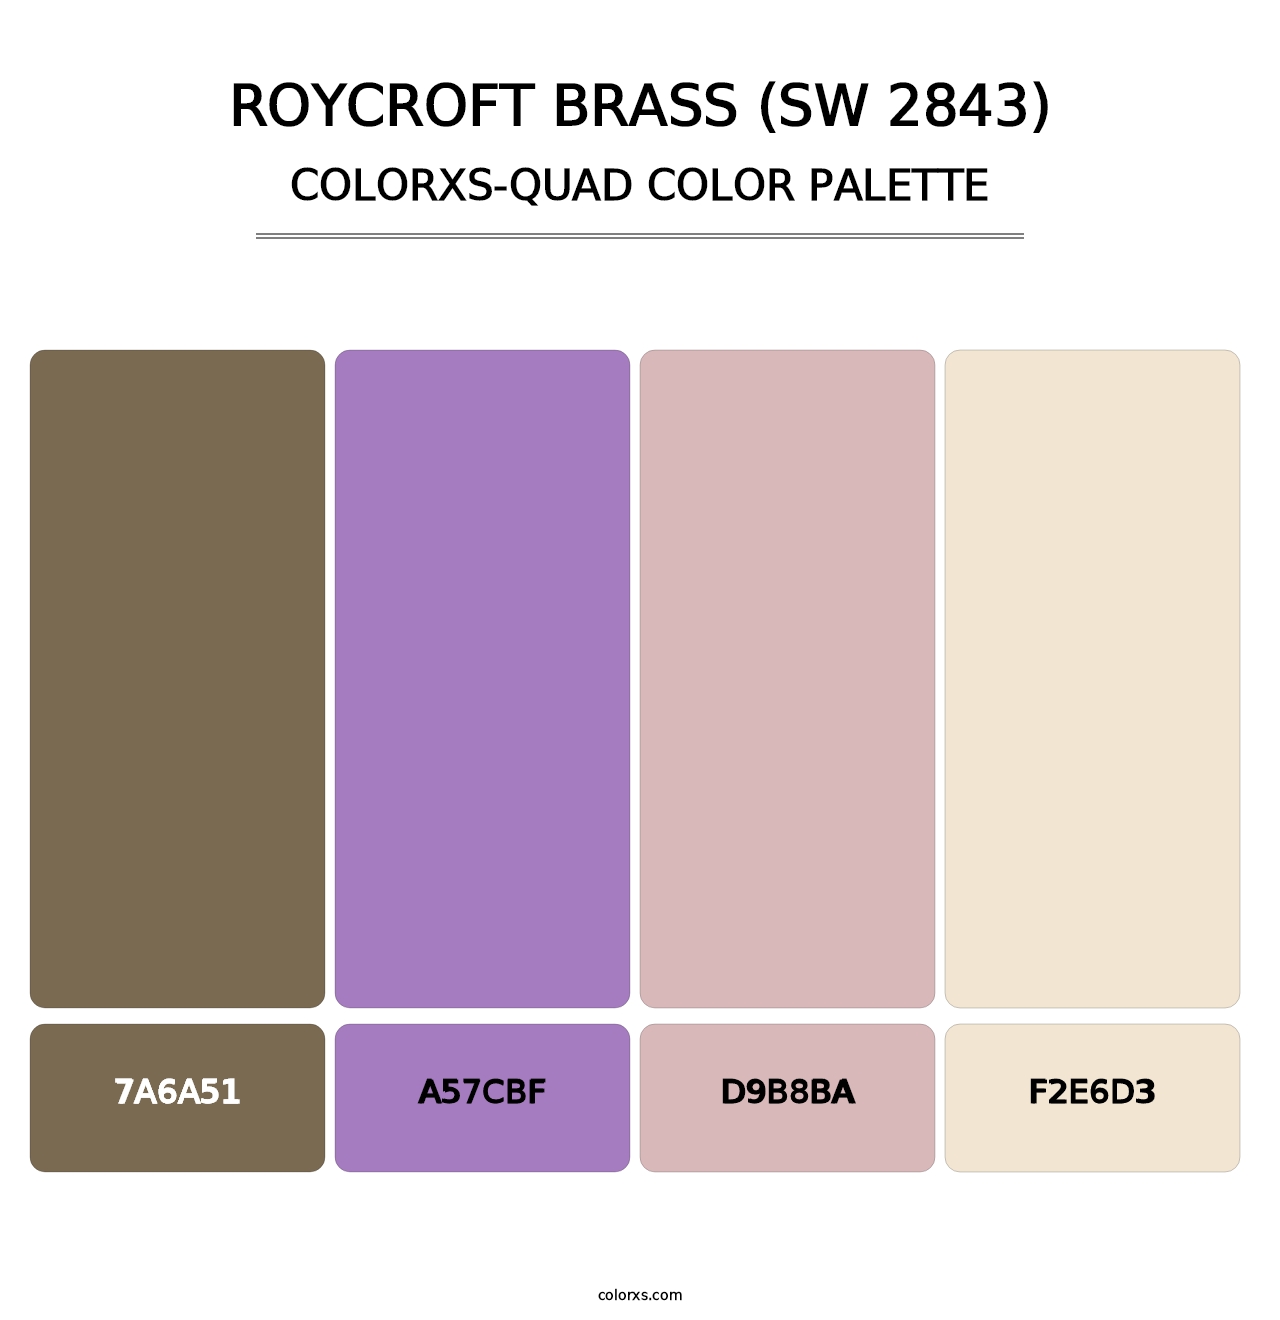 Roycroft Brass (SW 2843) - Colorxs Quad Palette